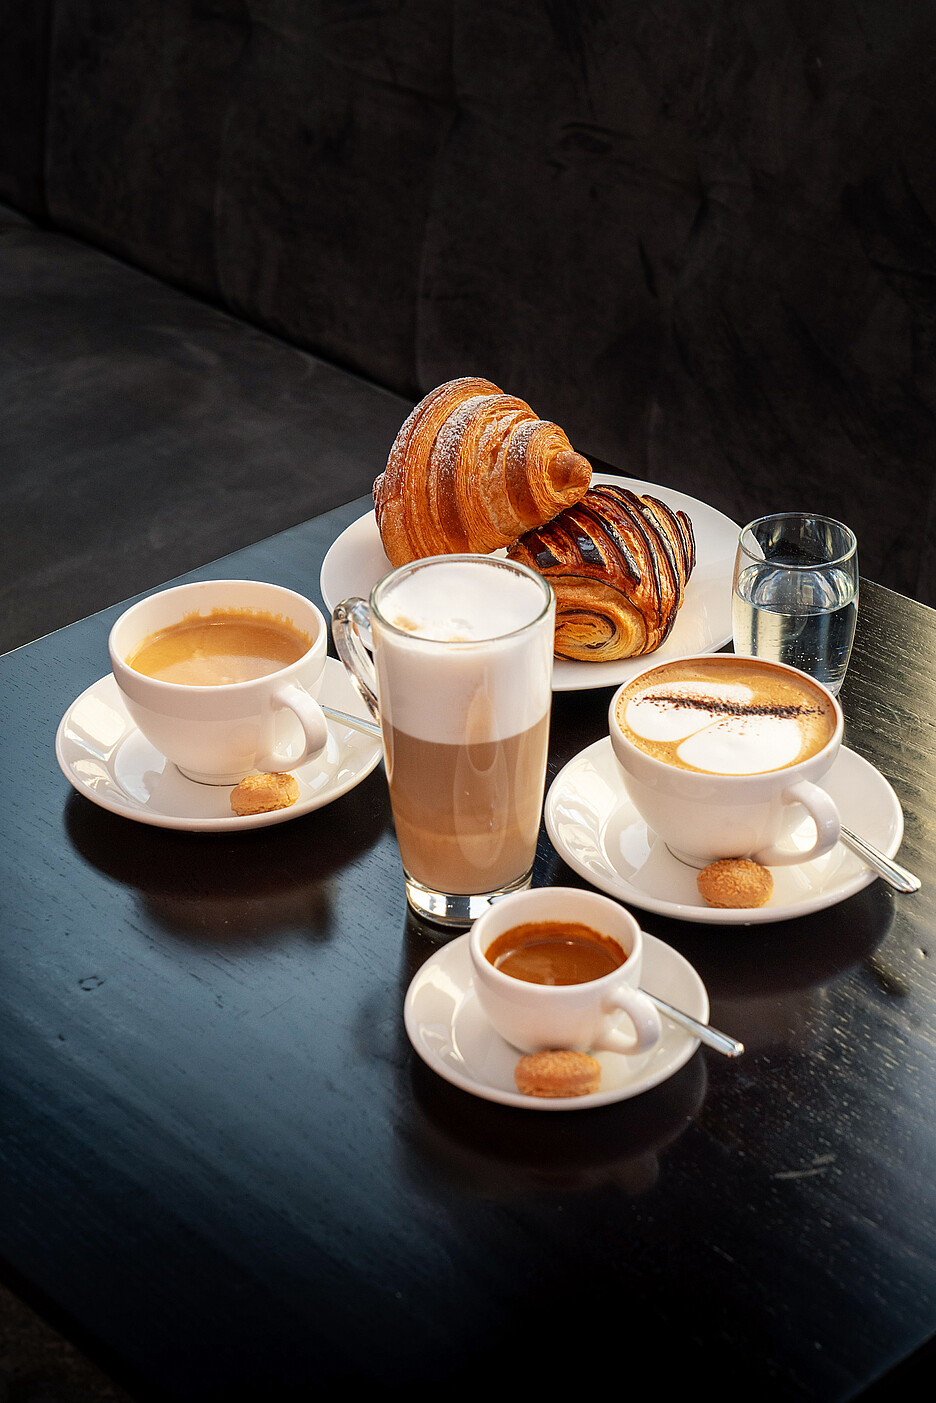 Des délices sélectionnés accompagnés du café le plus fin d’une XT8 de Cafina avec TopFoam, la mousse de lait éprouvée, stable et pleine de saveur.